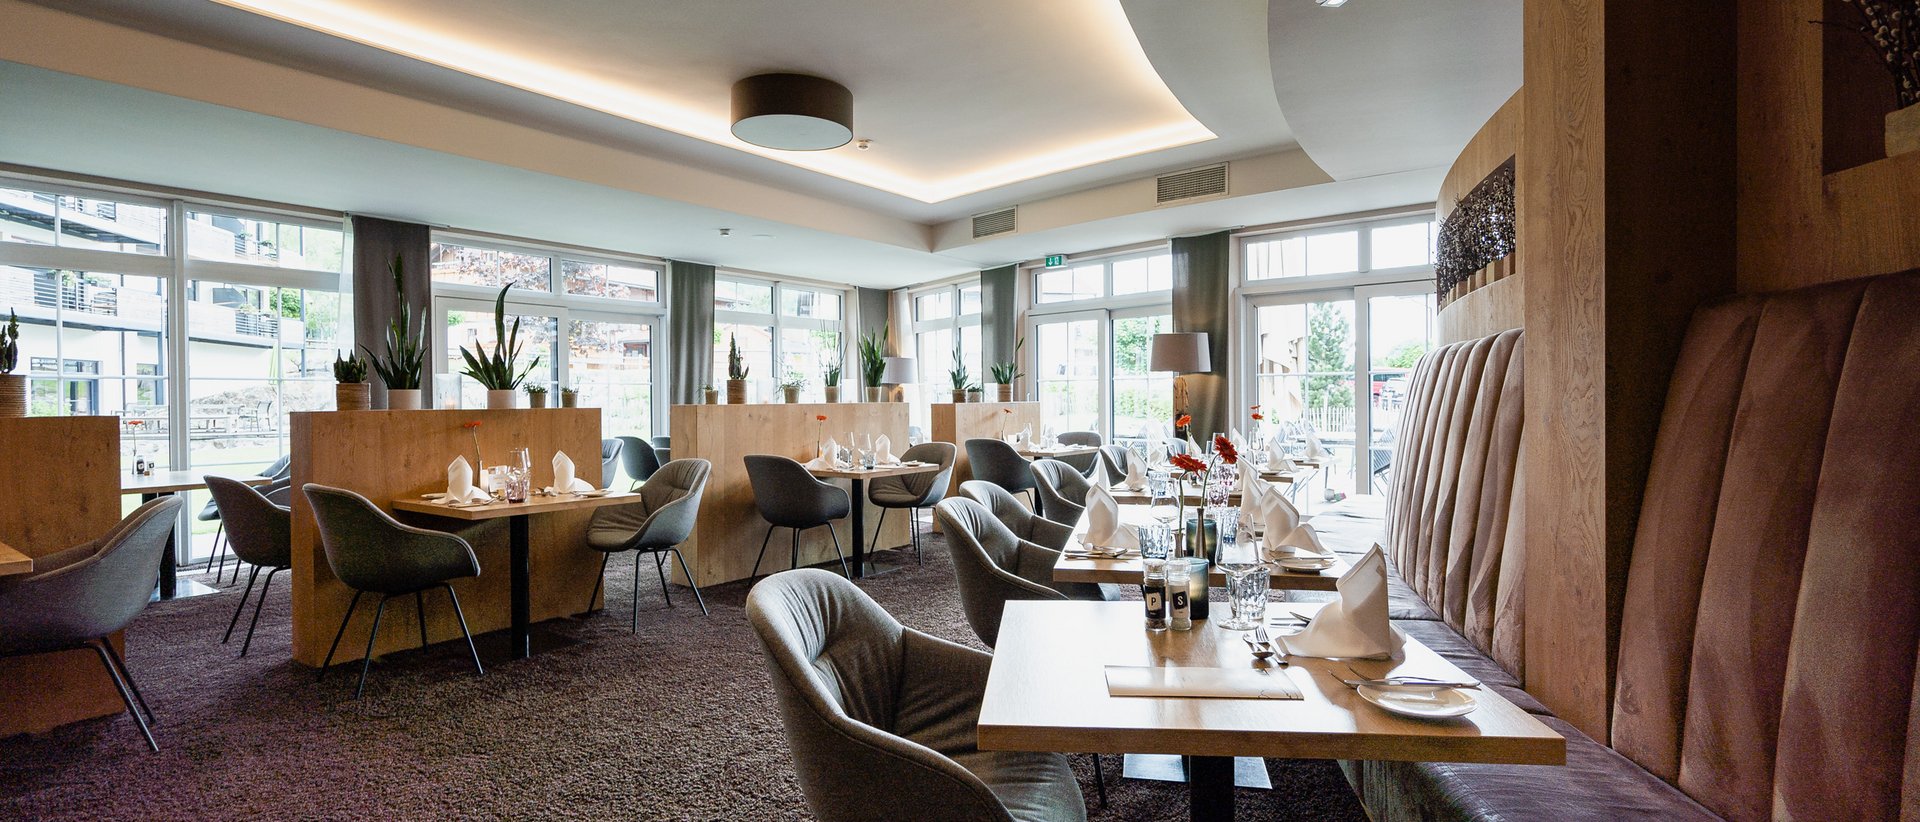 Restaurant, Chalet & Hotel in Deutschland – alles in einem!